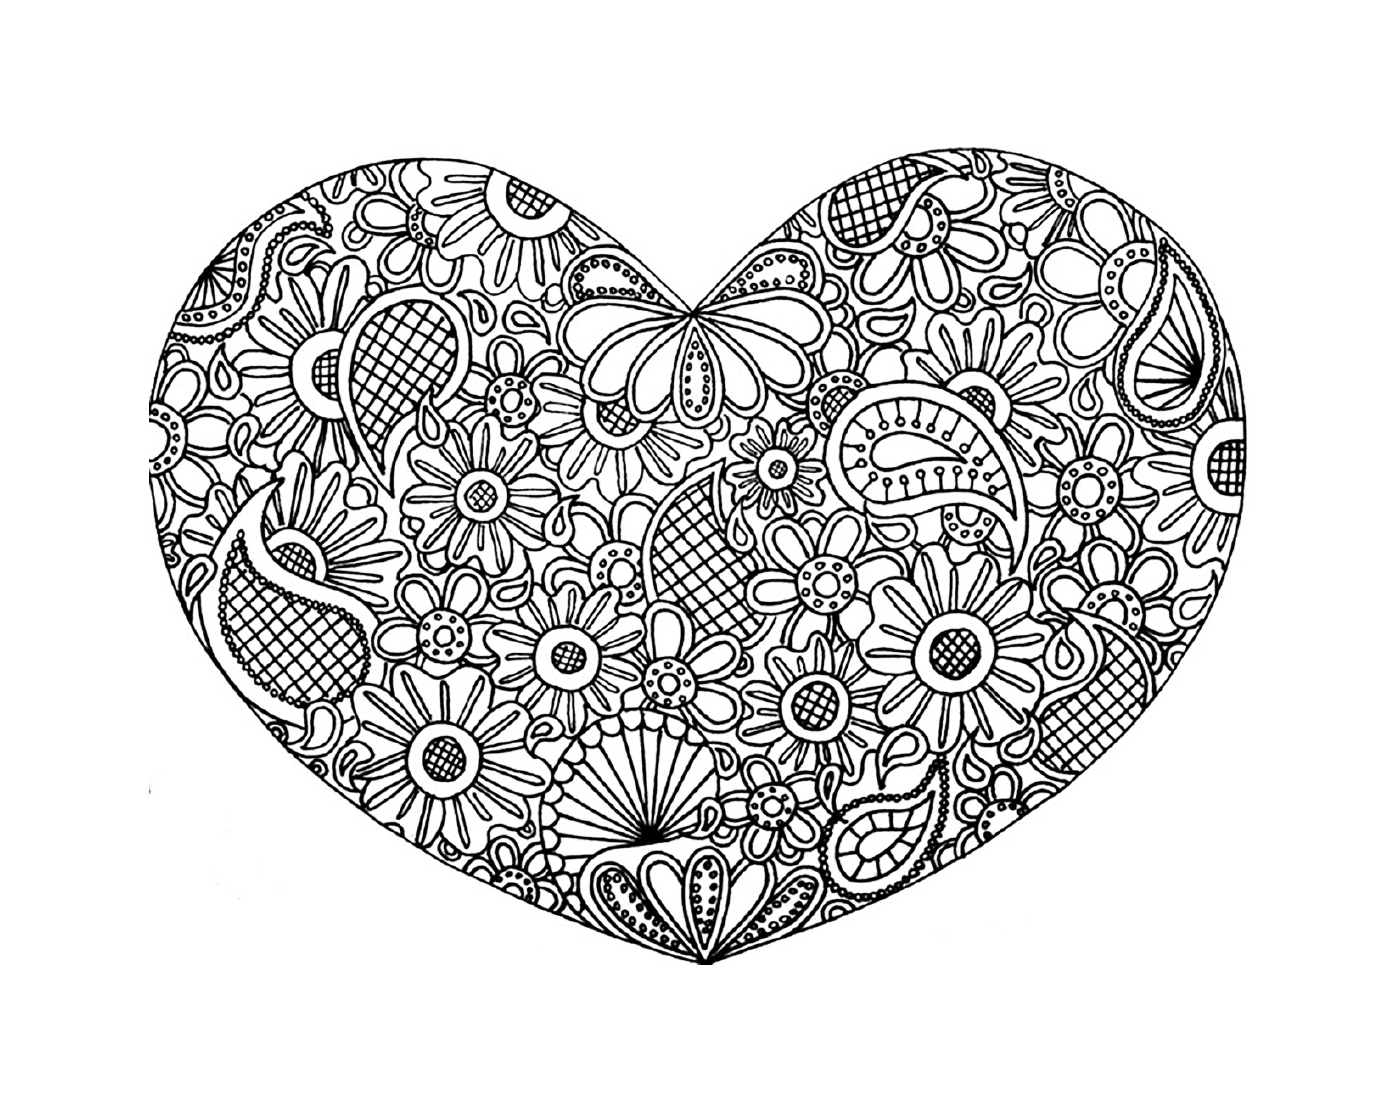  Um coração complexo com doodles 